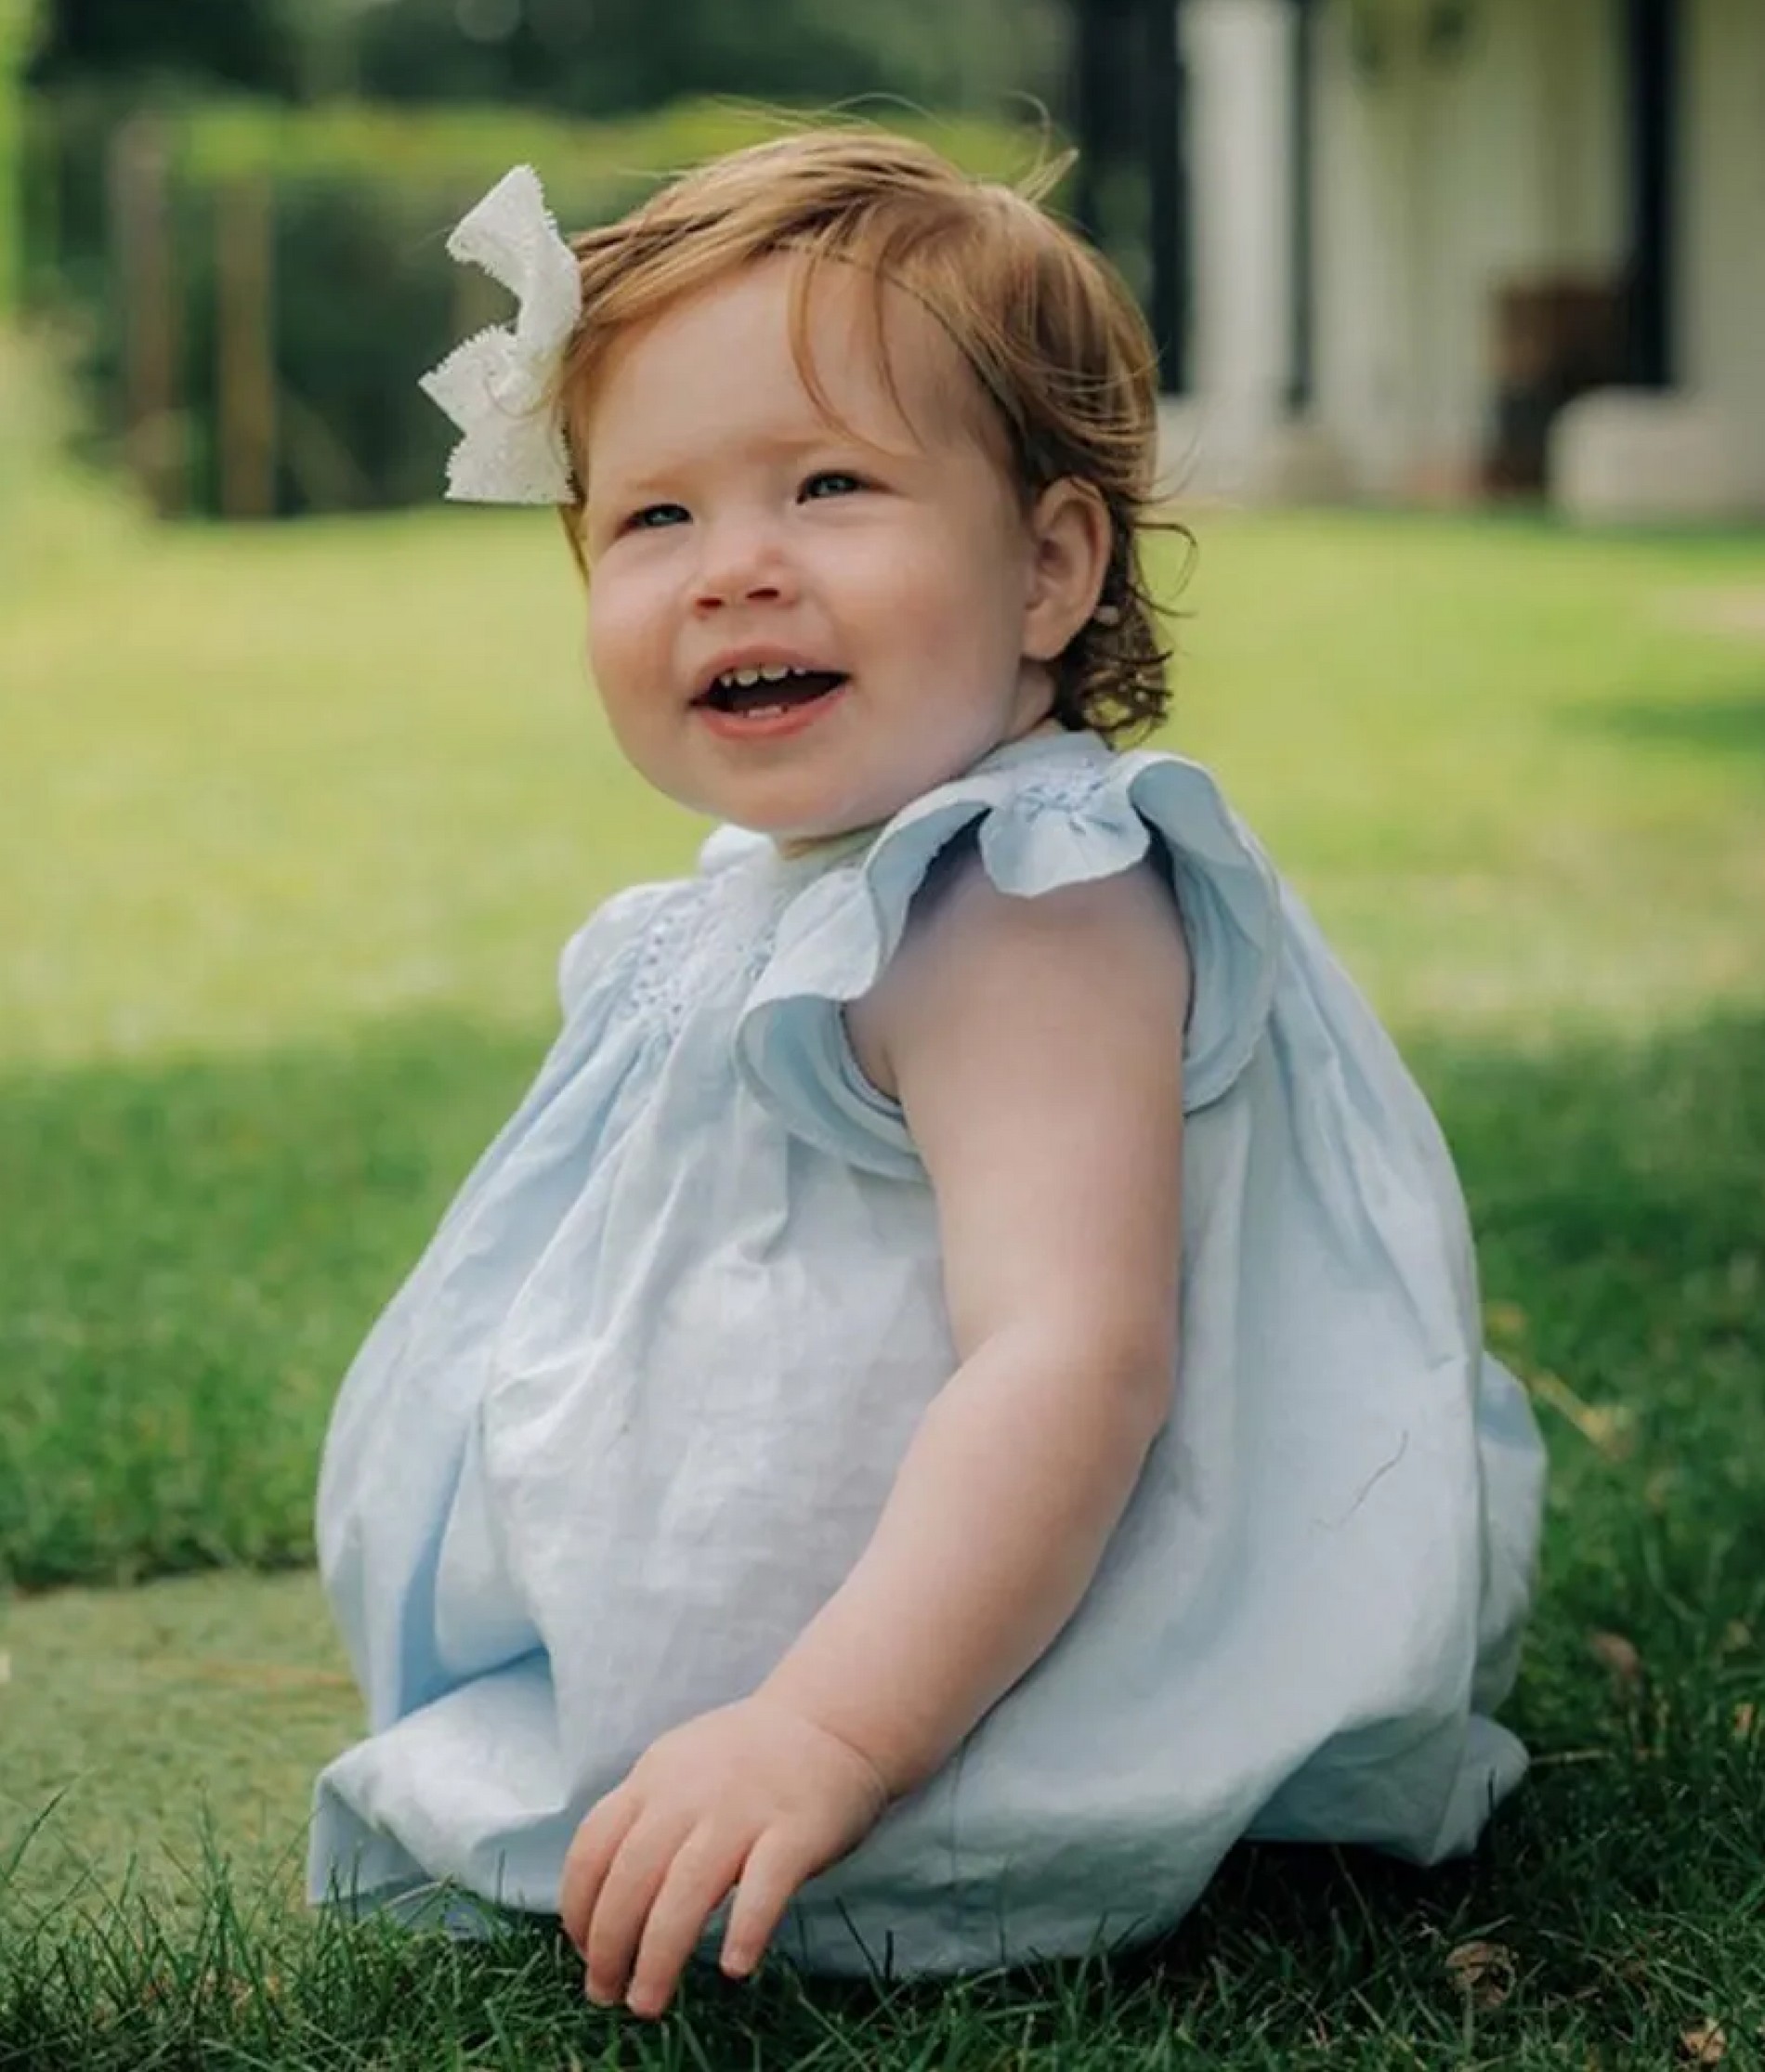 Появилось новое фото дочери Меган Маркл и принца Гарри в честь ее дня рождения